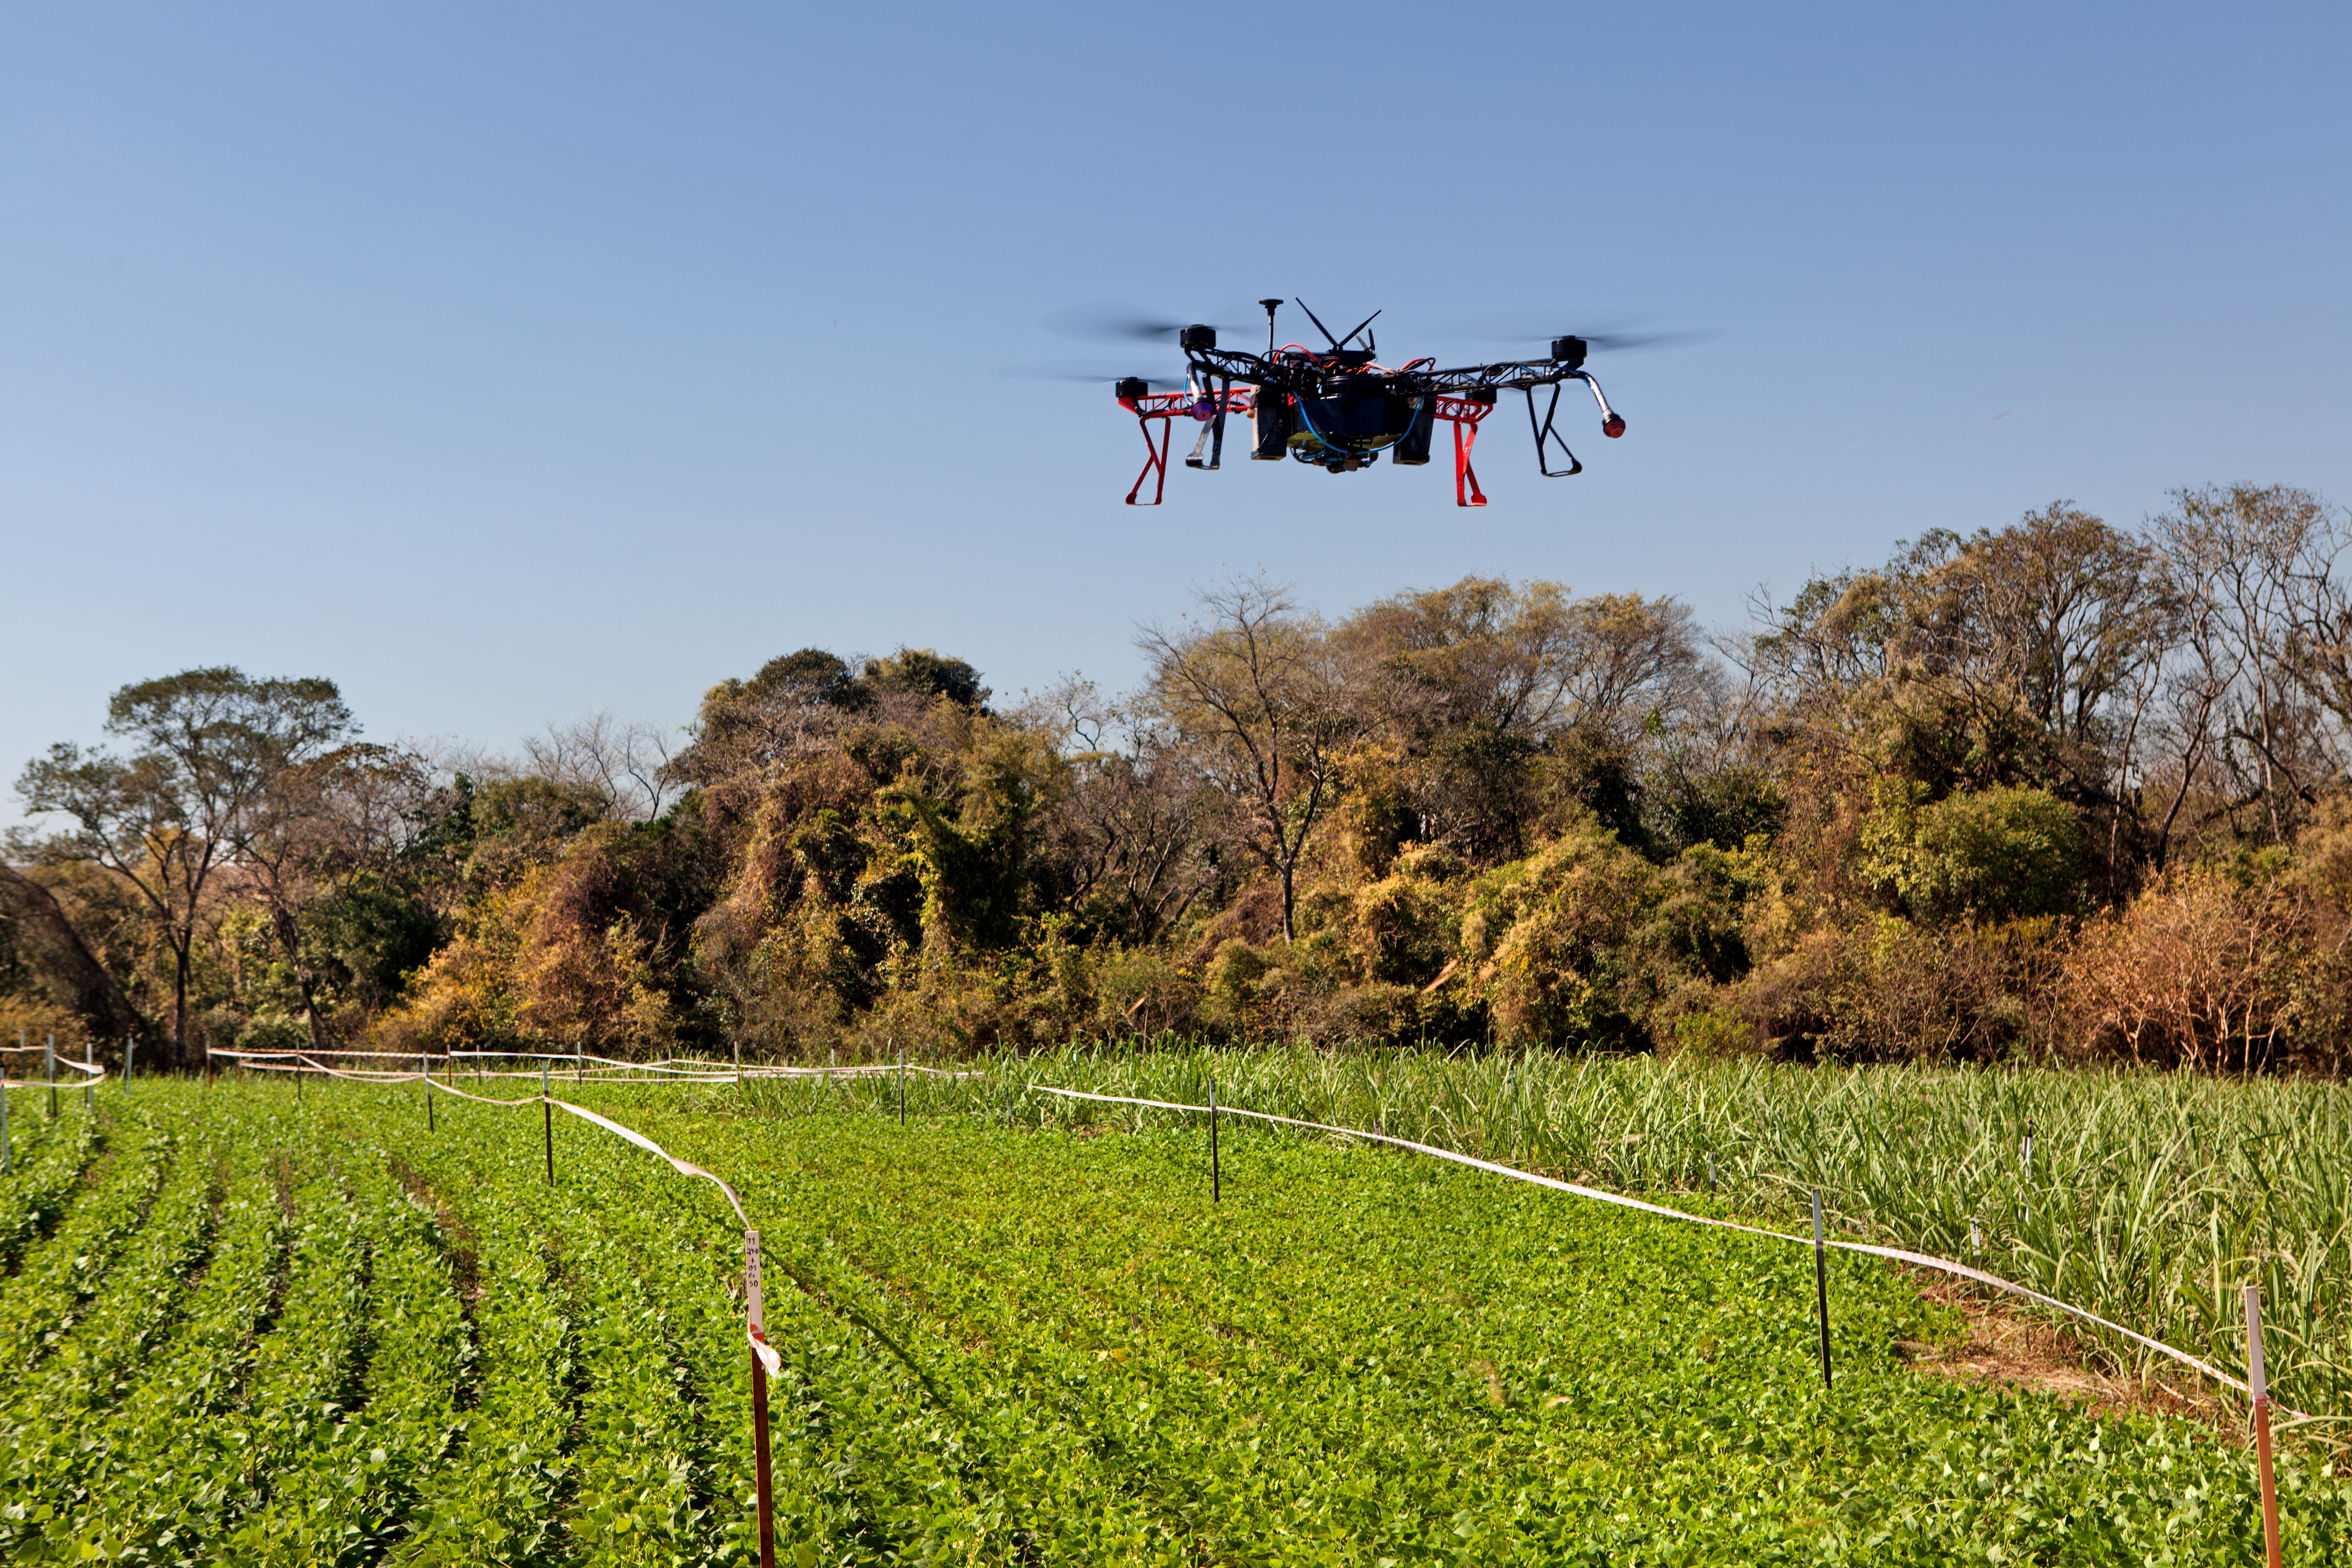 Drone spraying Synergen DRT in field trials in Brazil.